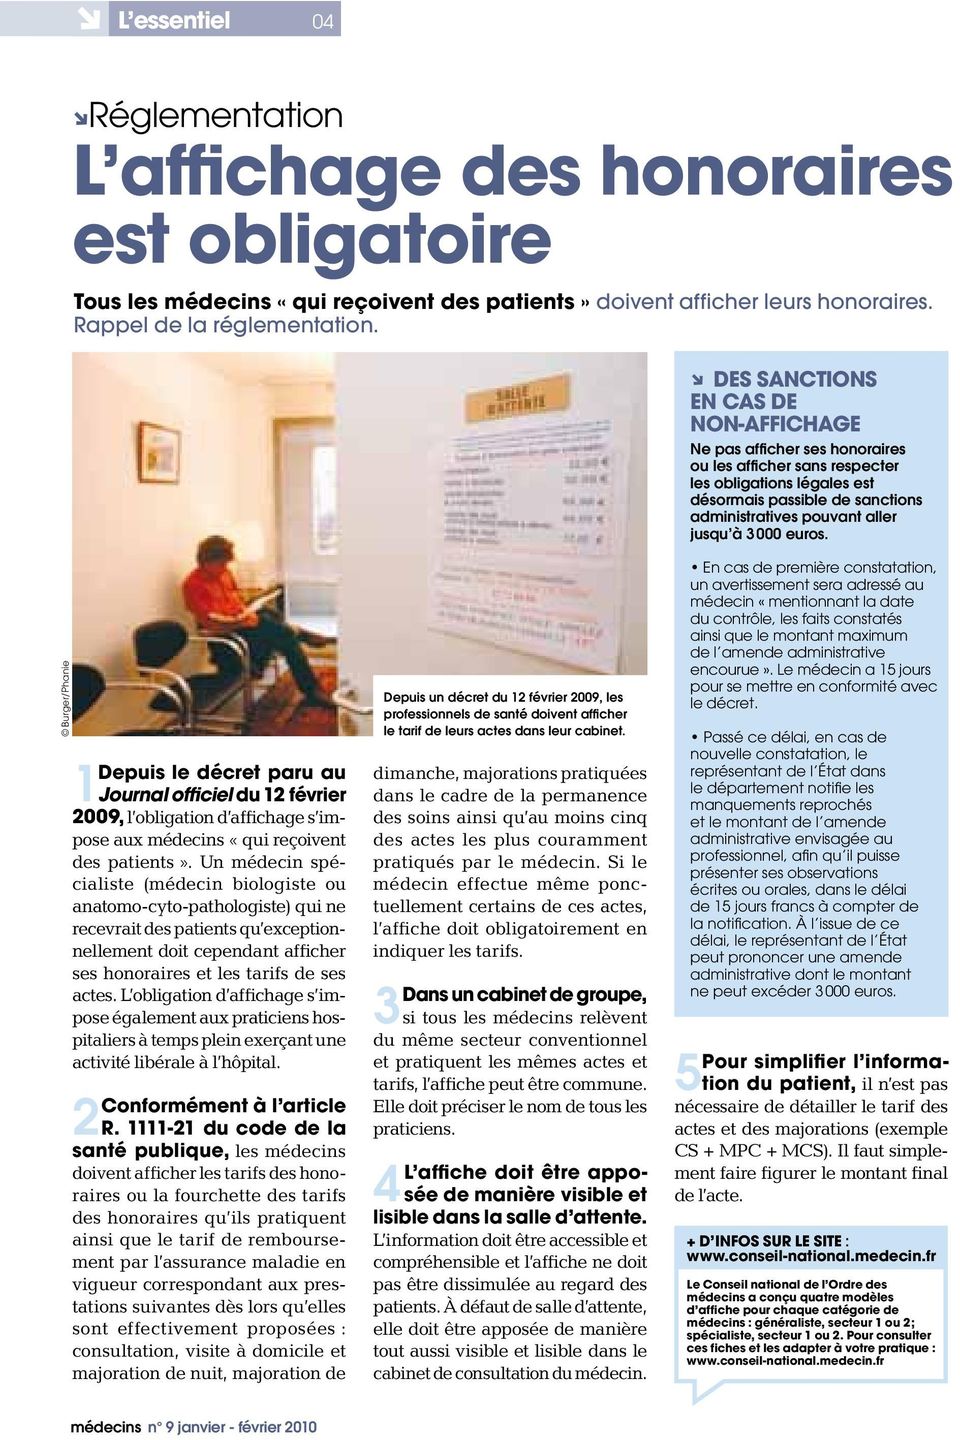 3 000 euros. Burger/Phanie 1Depuis le décret paru au Journal officiel du 12 février 2009, l obligation d affichage s impose aux médecins «qui reçoivent des patients».